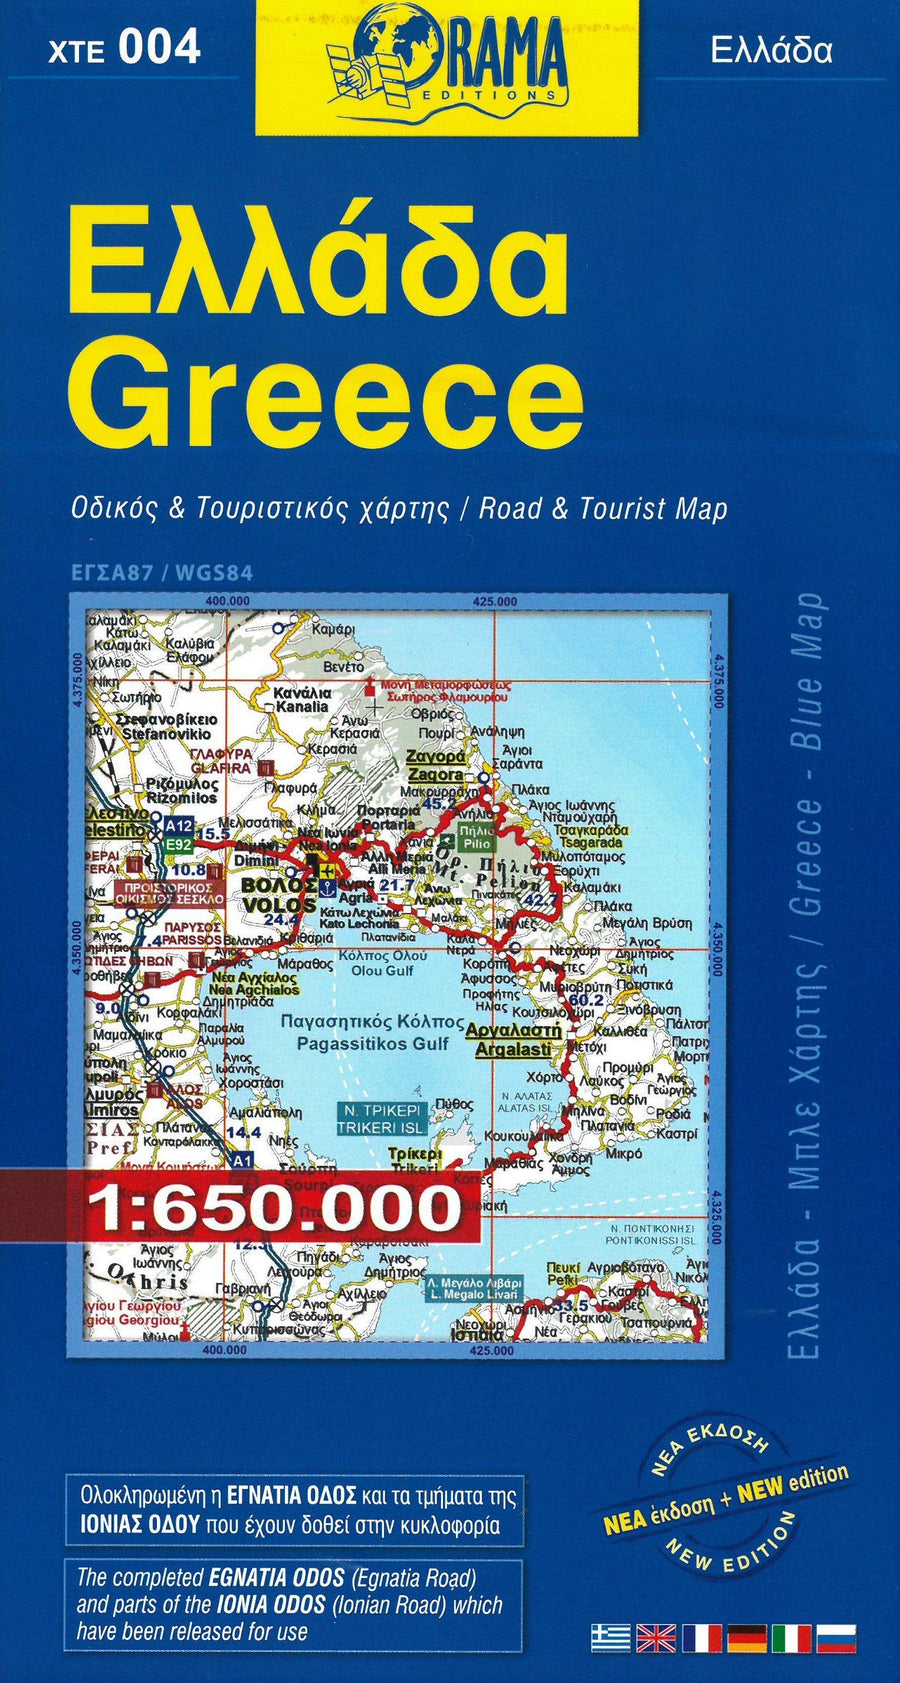 Carte détaillée - Grèce - Blue map | Orama carte pliée Orama 